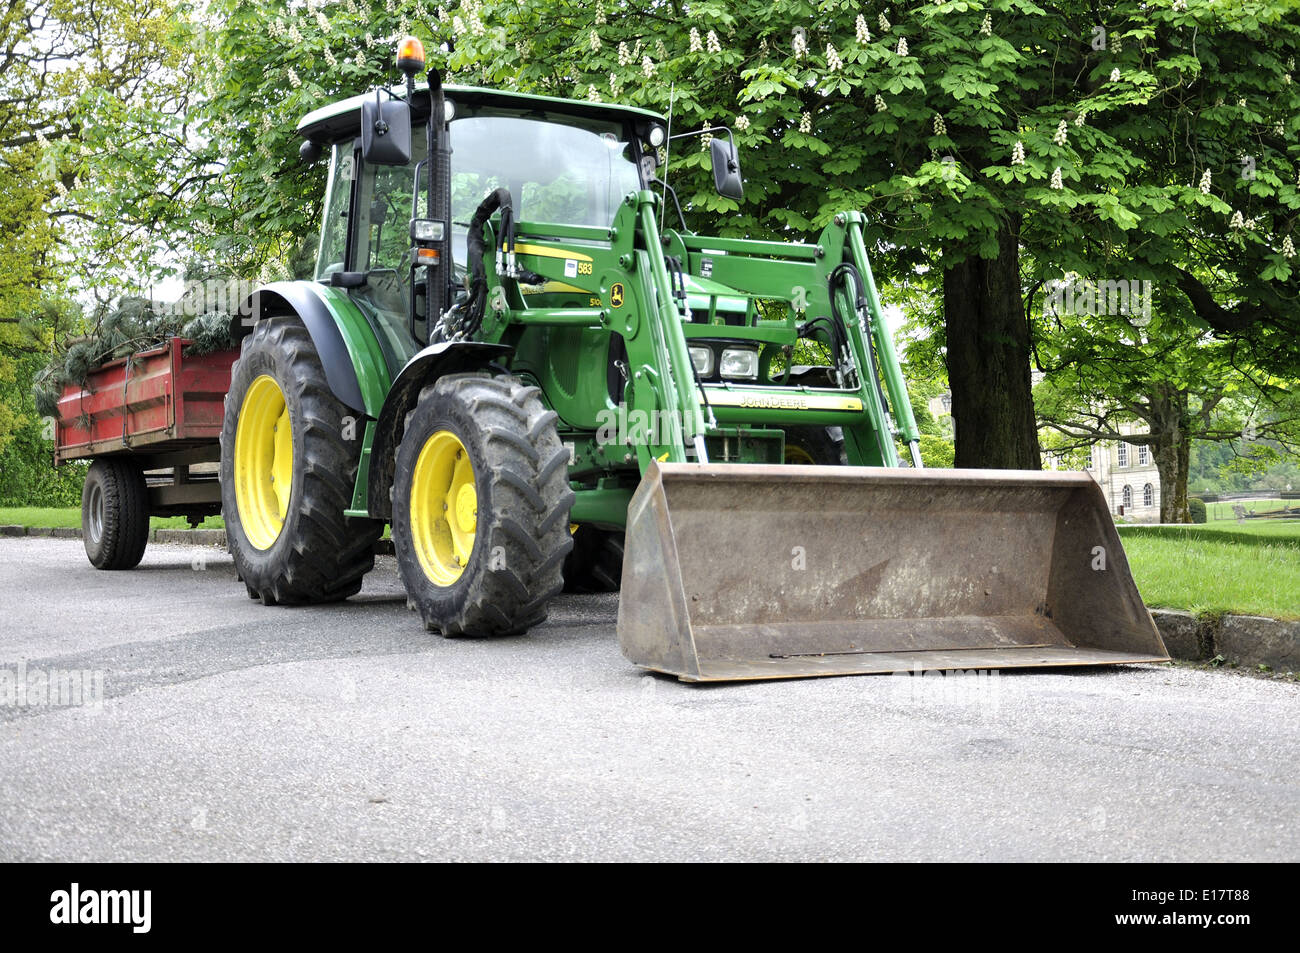 Green John Deere Traktor mit Schaufel am Vorder- und roten Anhänger geparkt  auf Weg Stockfotografie - Alamy